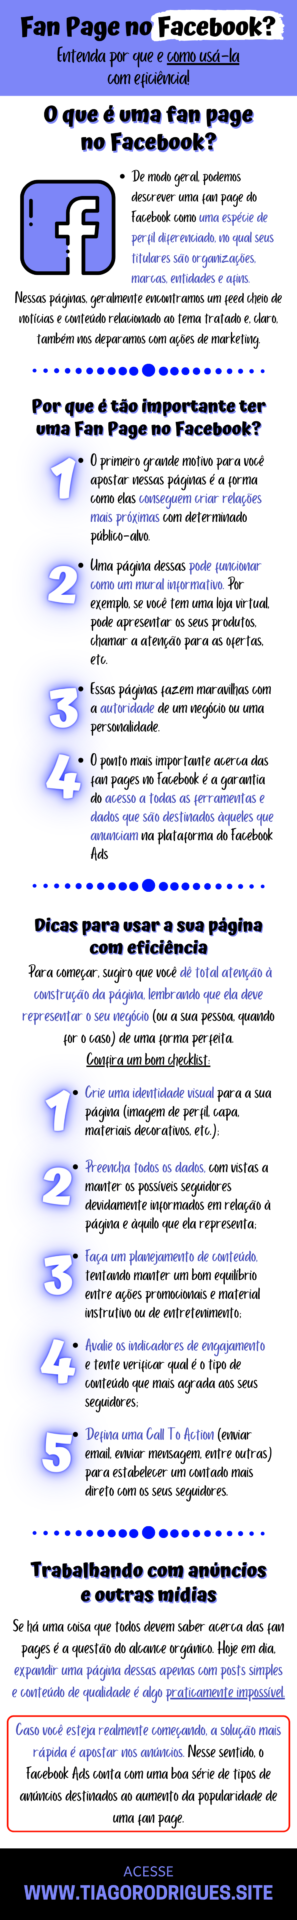 Infográfico sobre o artigo Fan Page no Facebook Entenda por que e como usá-la com eficiência